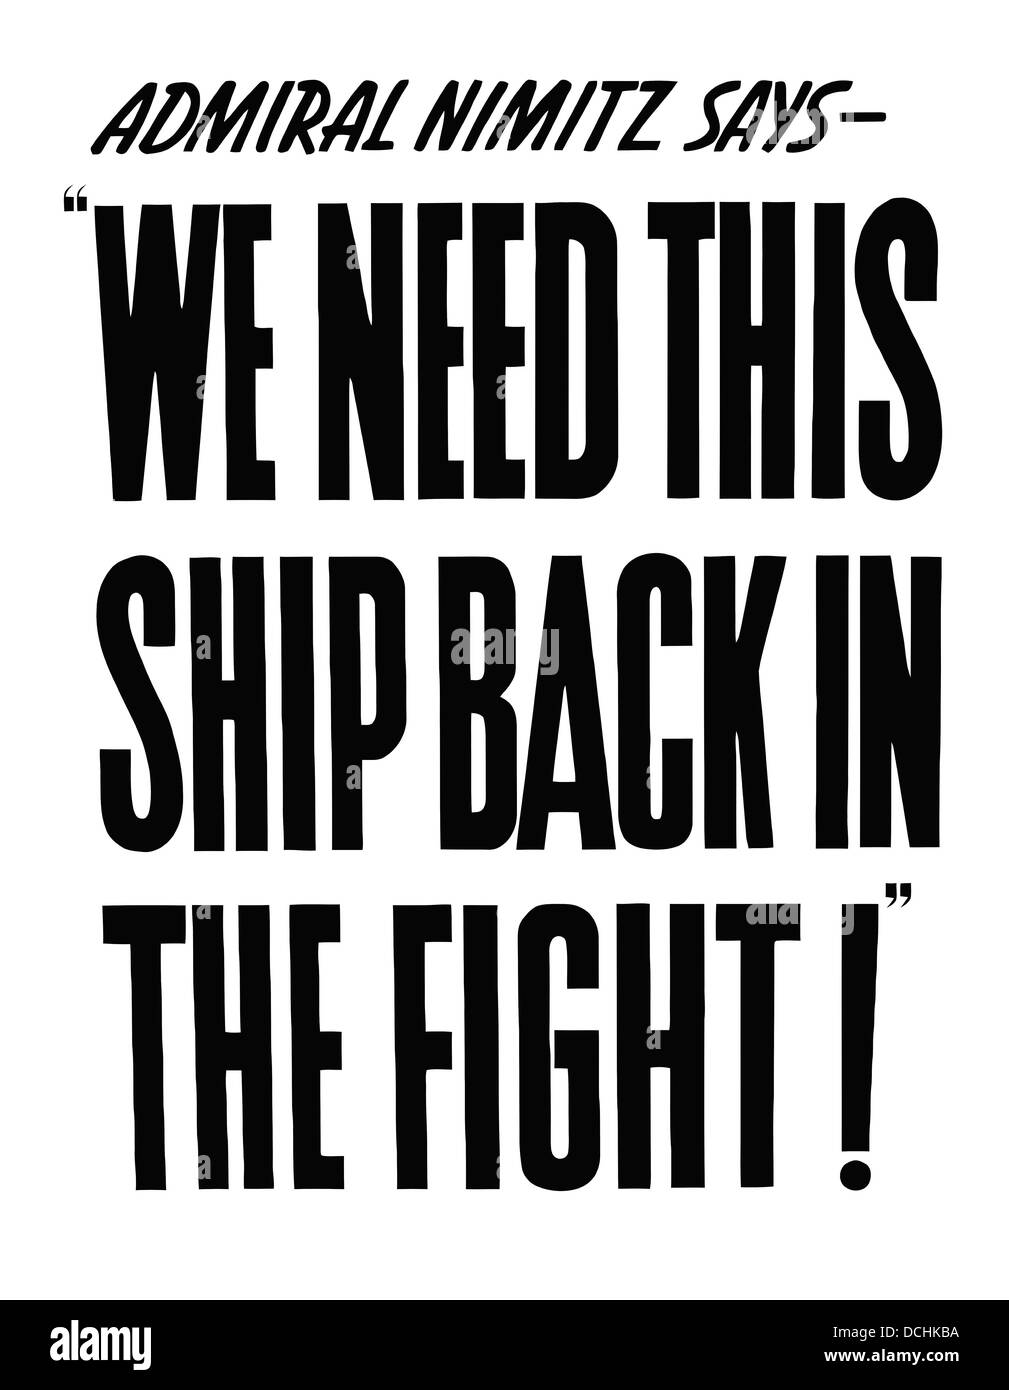 Vintage Weltkrieg Propaganda-Plakat. Es liest, Admiral Nimitz sagt - wir brauchen dieses Schiff zurück In The Fight! Stockfoto